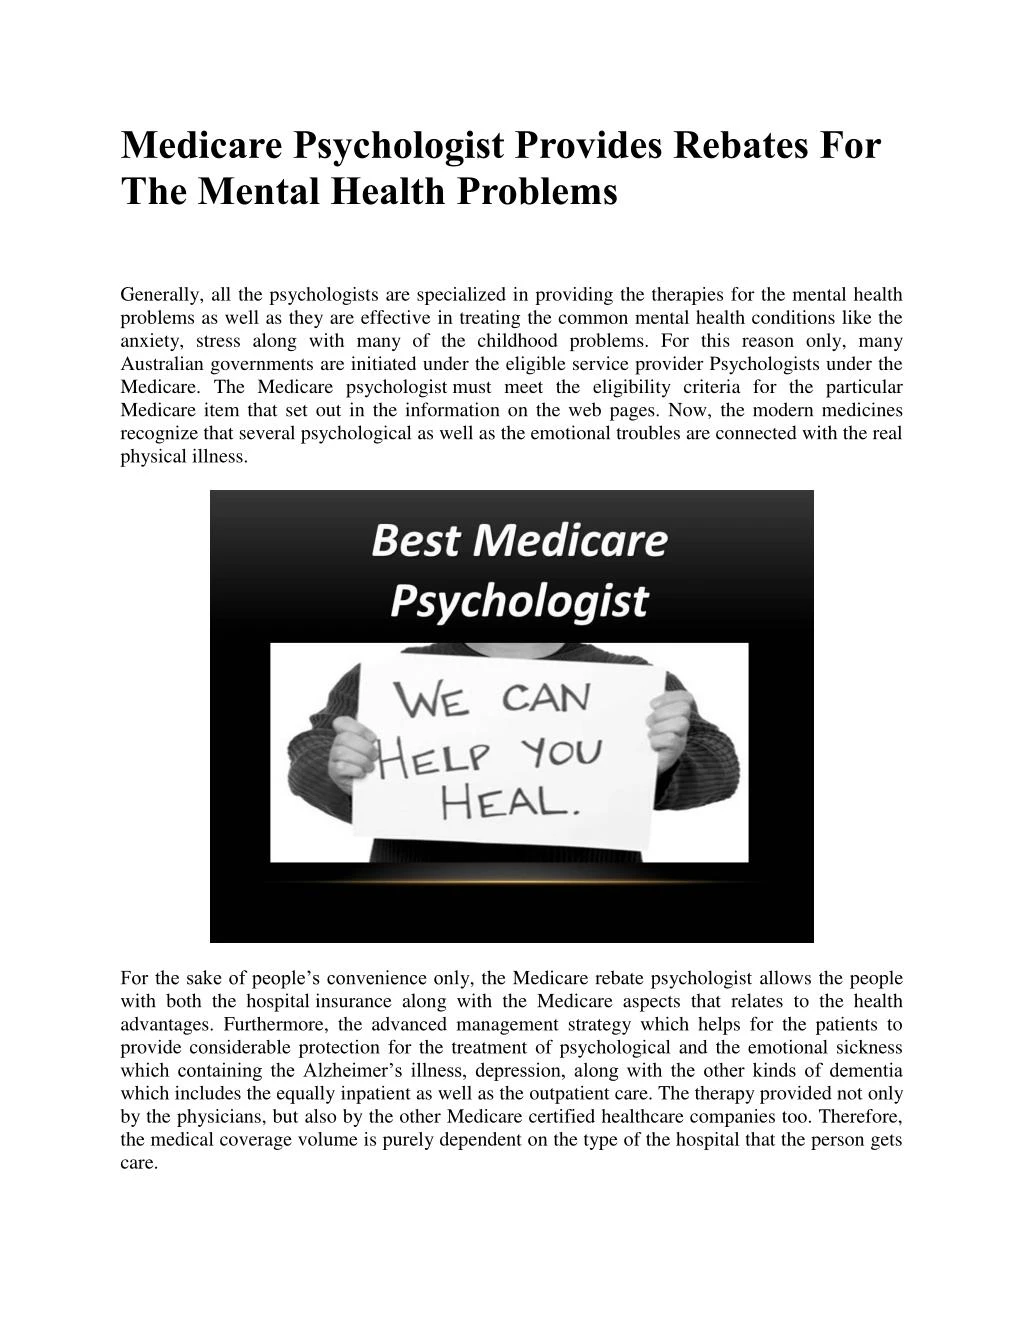 PPT Medicare Psychologist Provides Rebates For The Mental Health 